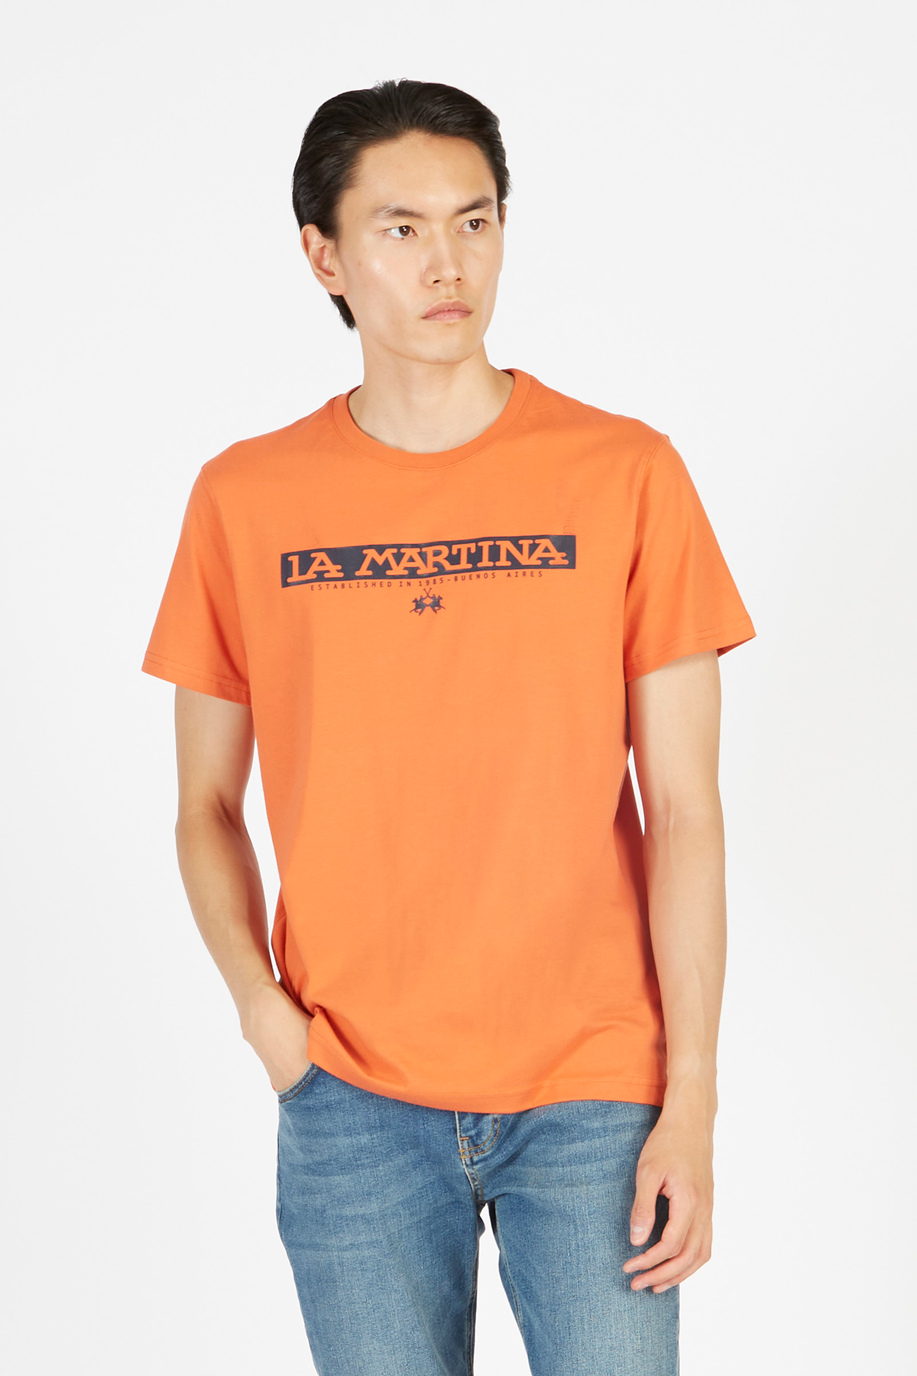 Men’s short-sleeved regular fit crew neck t-shirt - Monogrammed gifts for him | La Martina - Official Online Shop